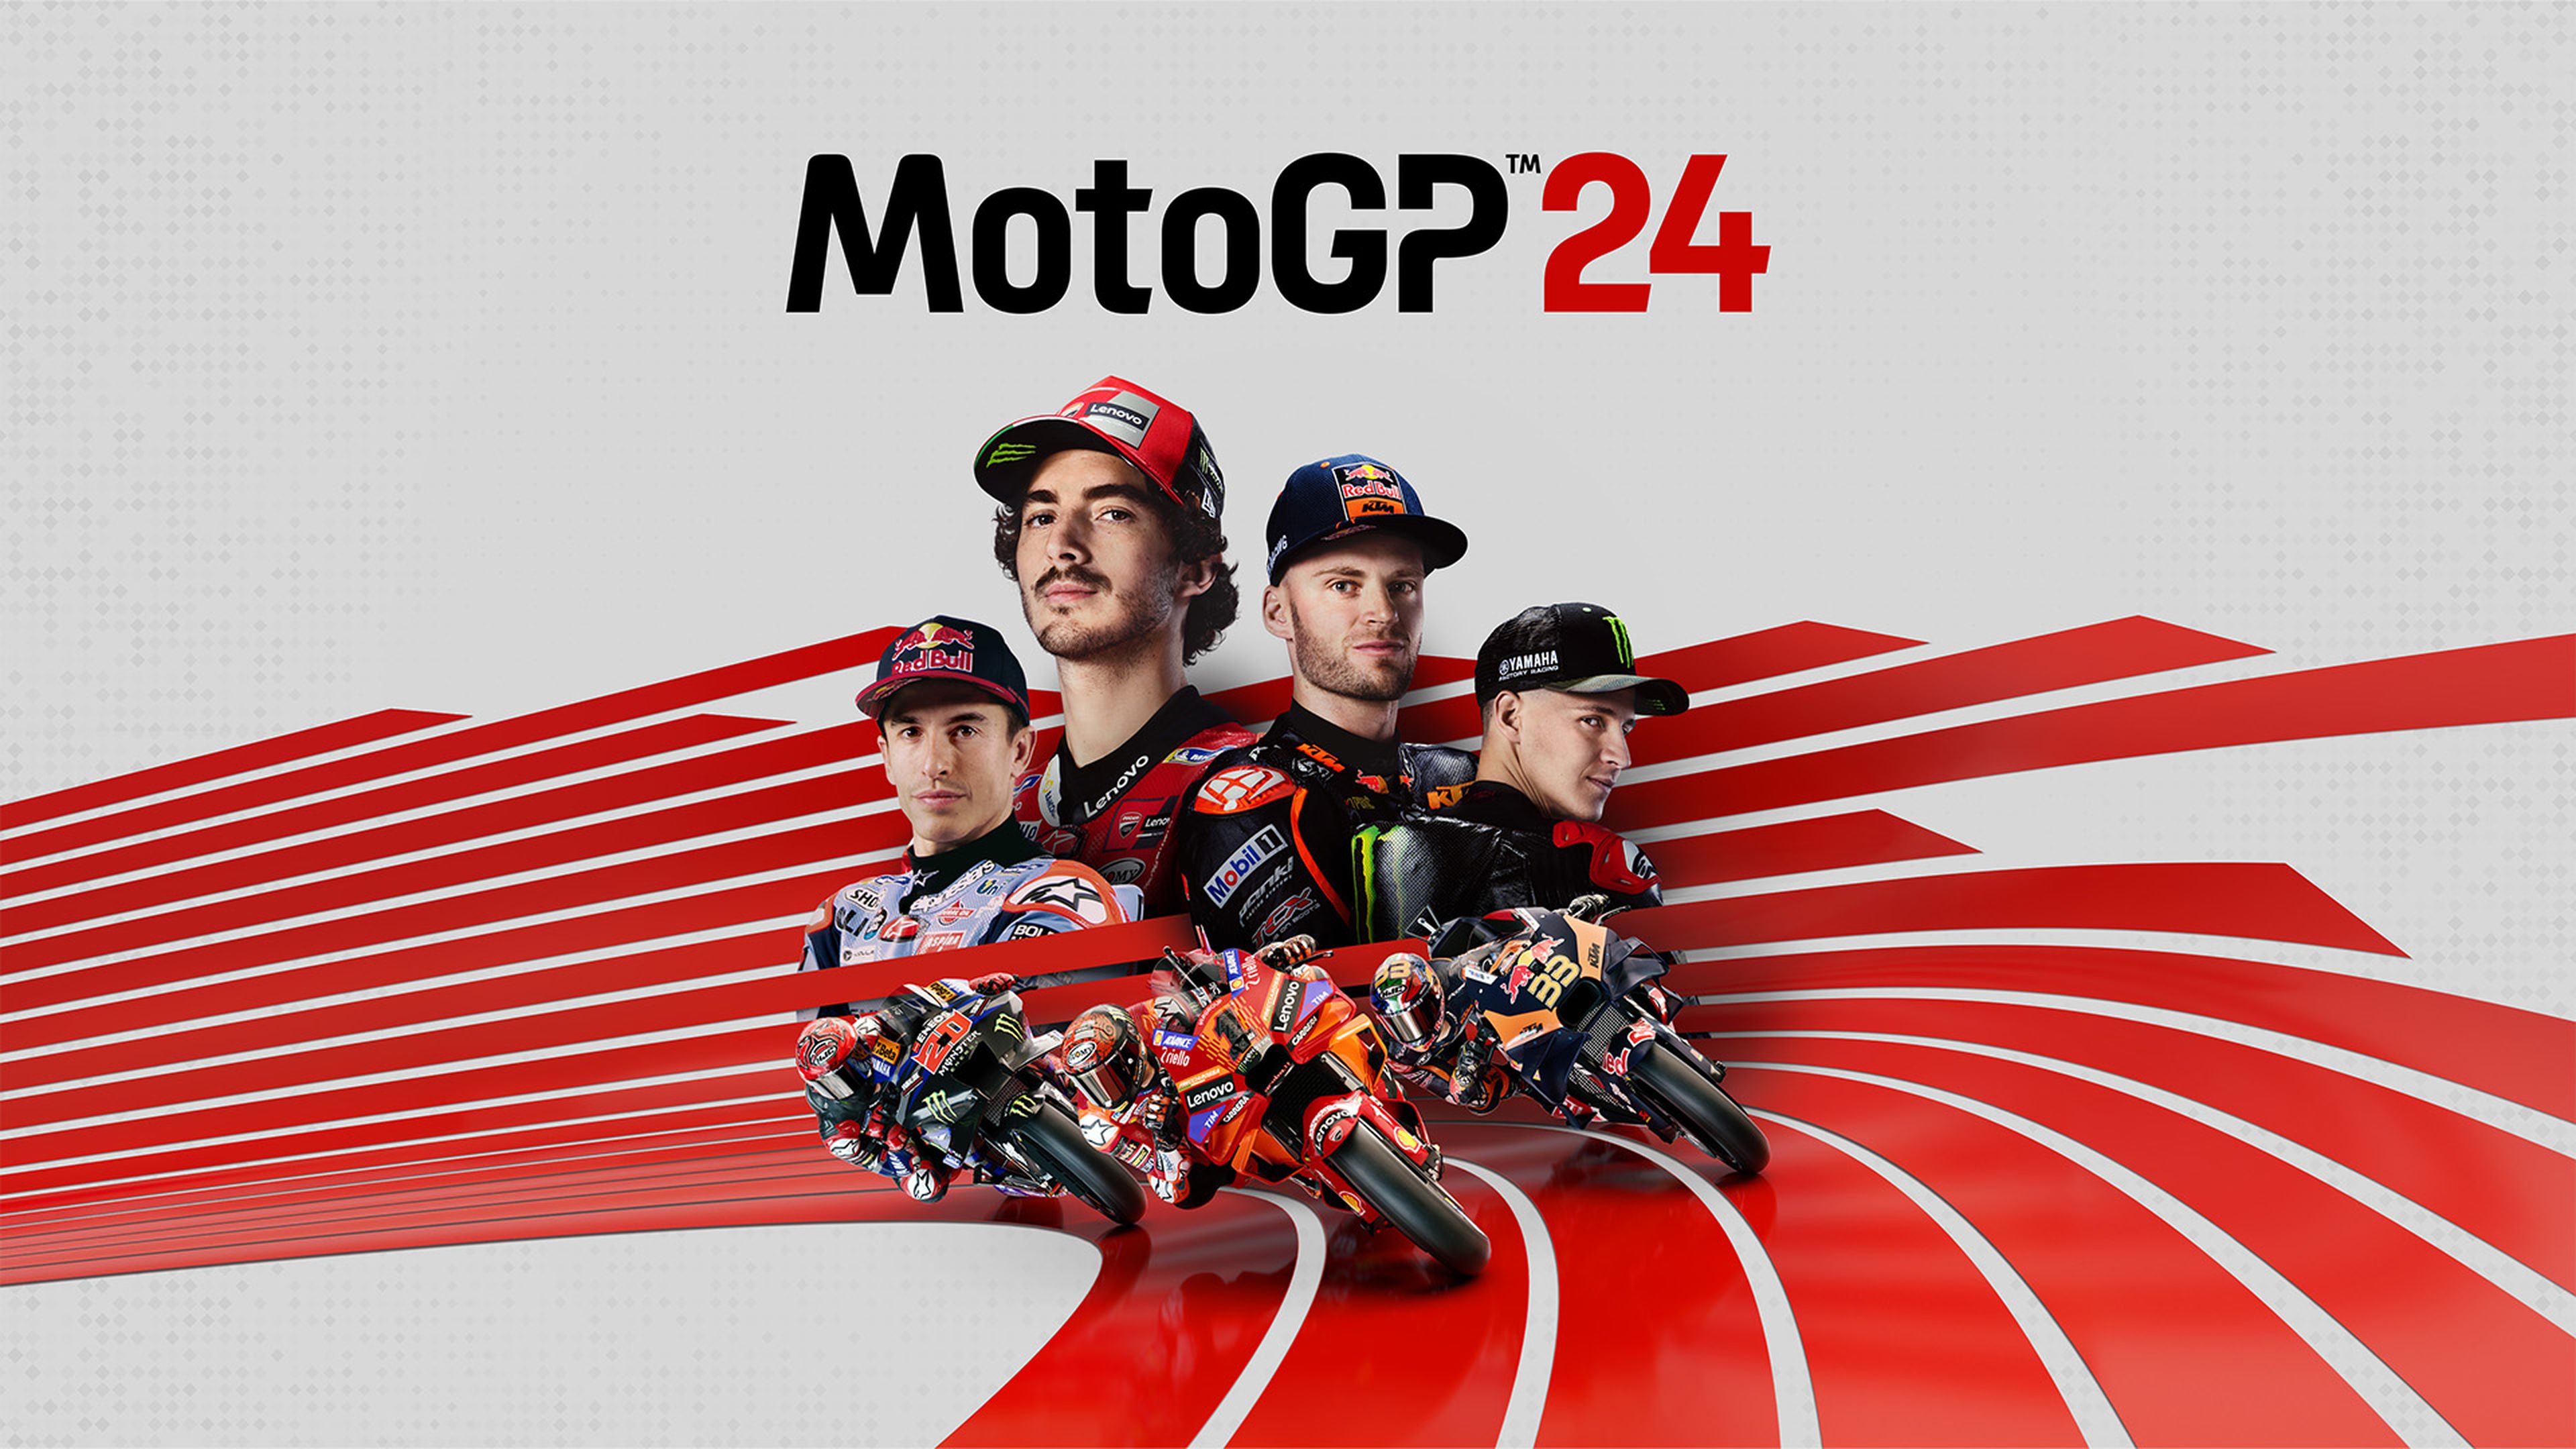 Moto GP 24